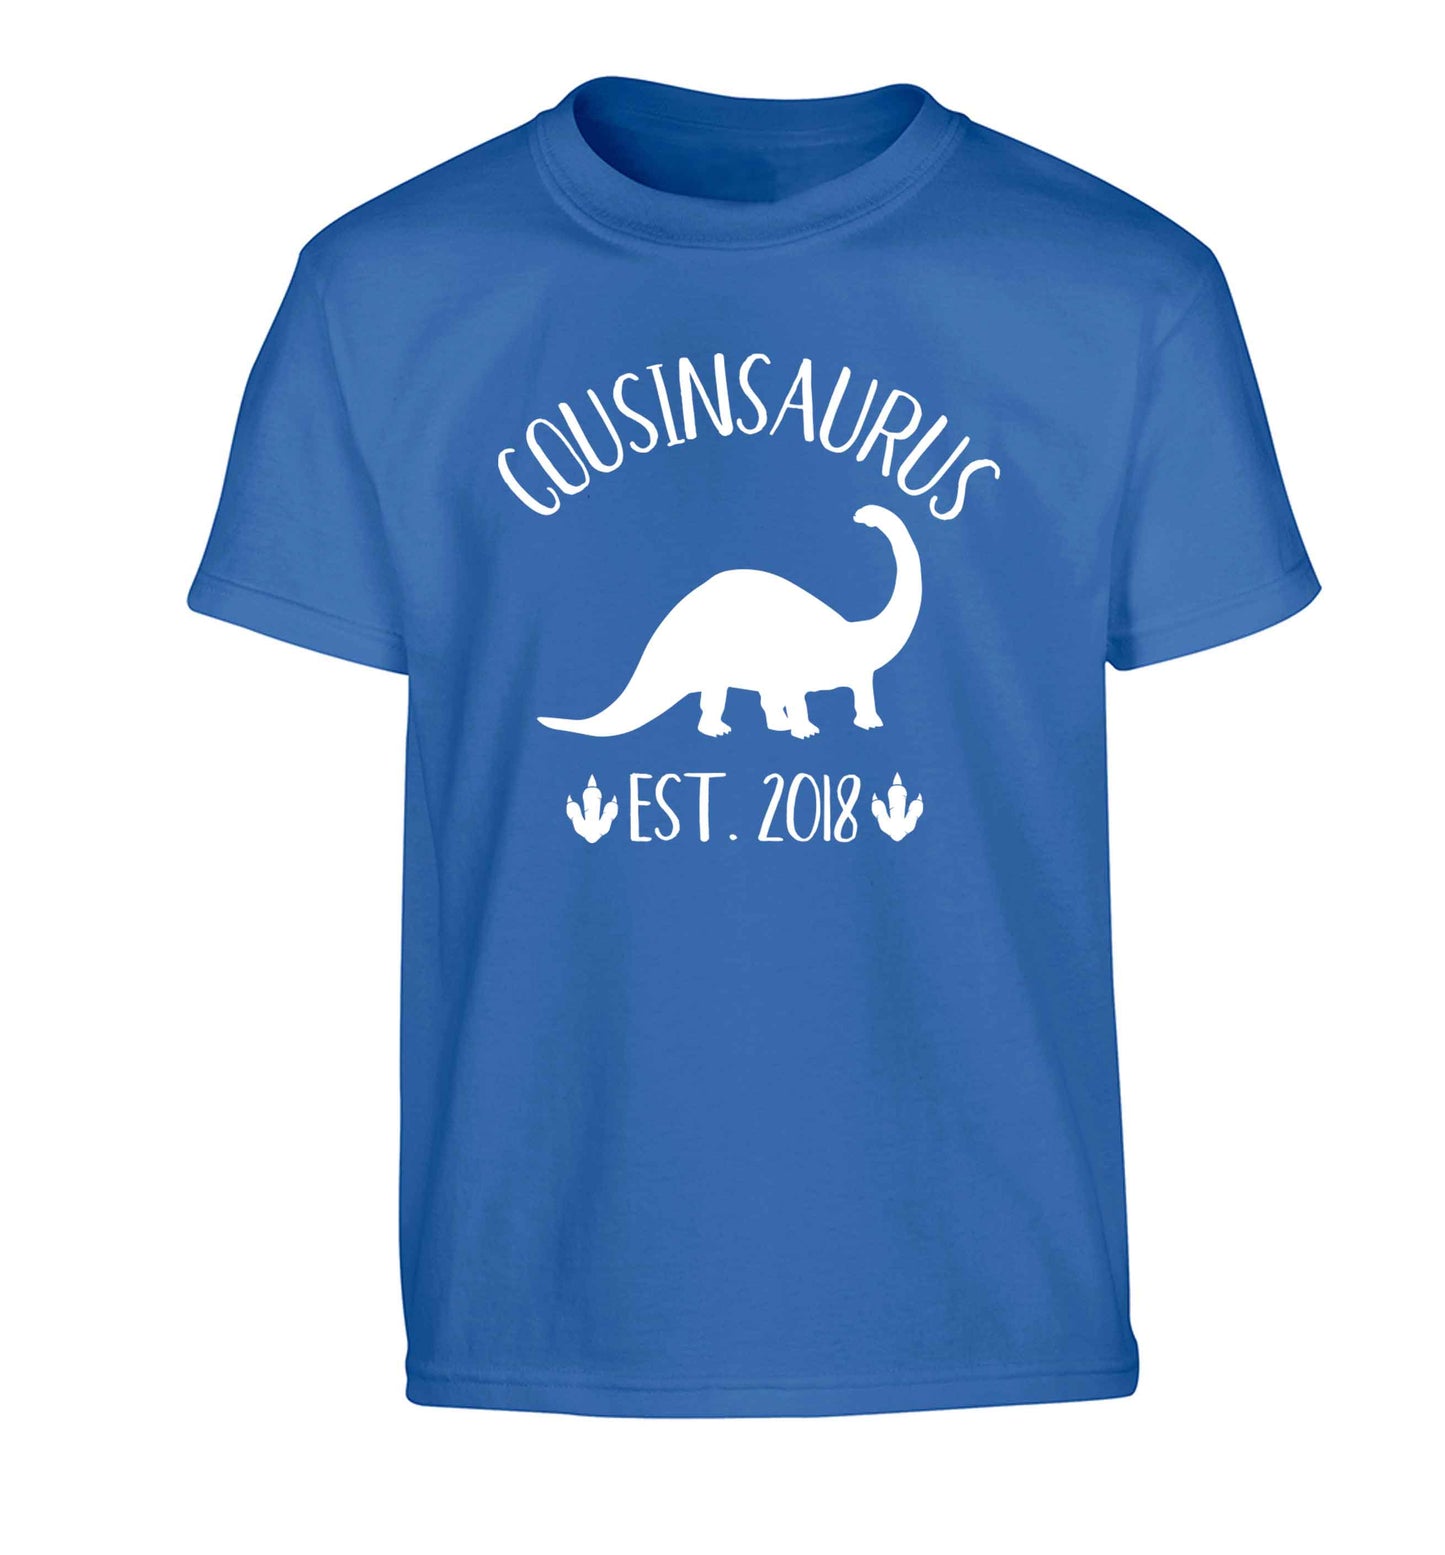 Personalised cousinsaurus since (custom date) Children's blue Tshirt 12-13 Years